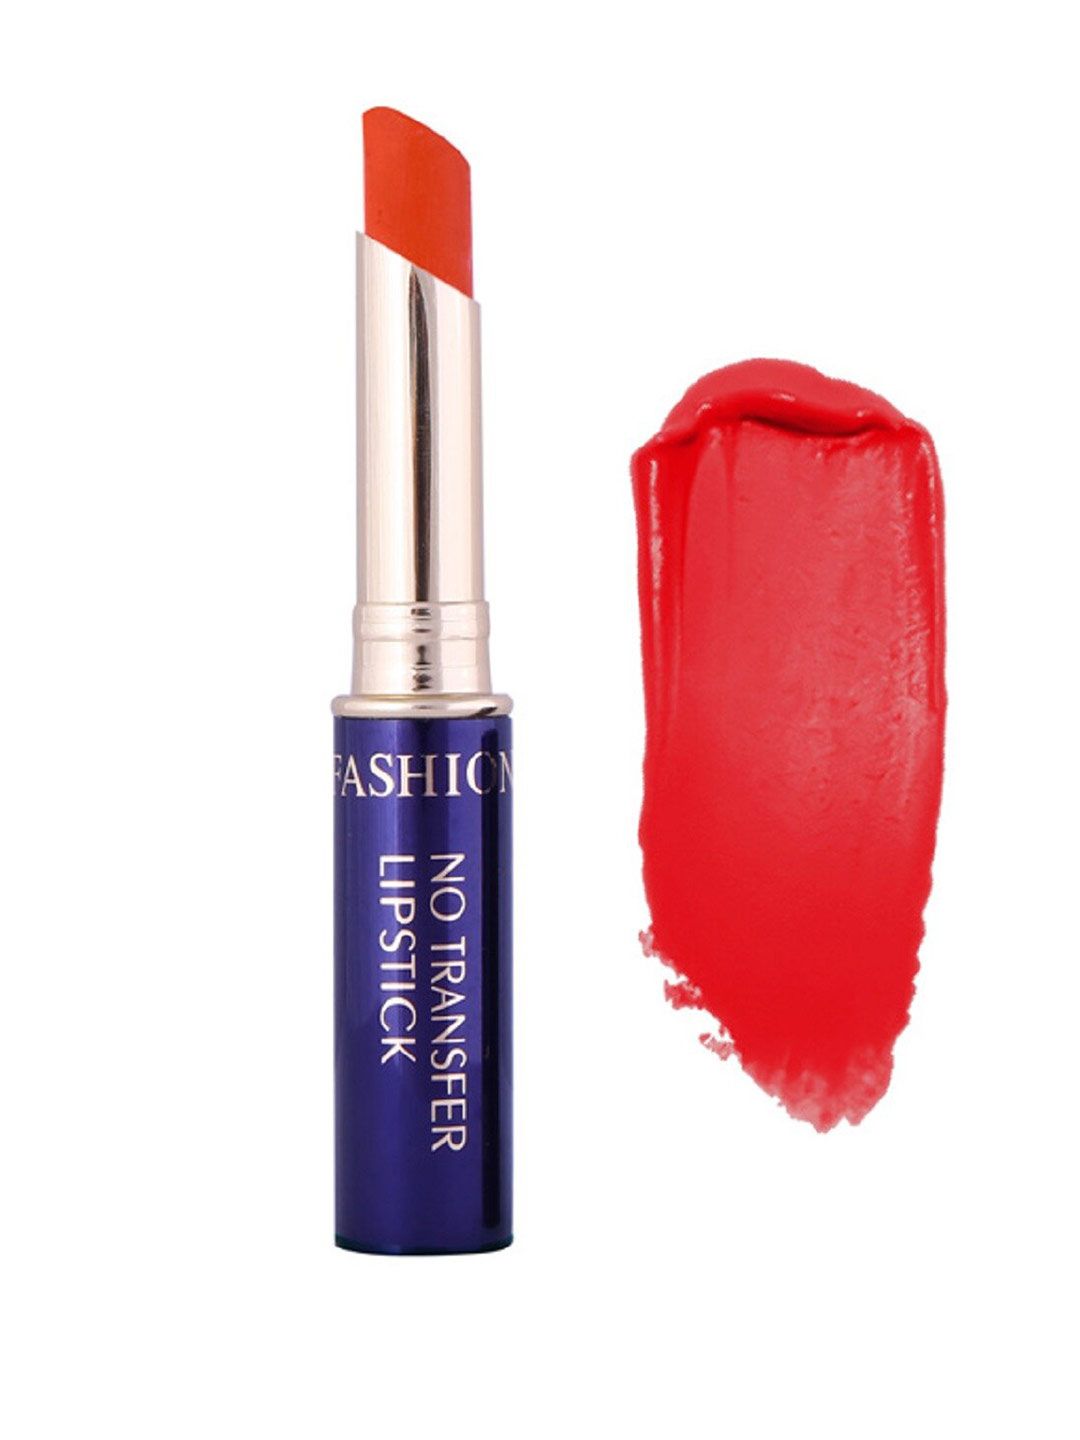 Fashion Colour No Transfer Matte Waterproof Lipstick 2.6 g - Coral Orange 19 Price in India